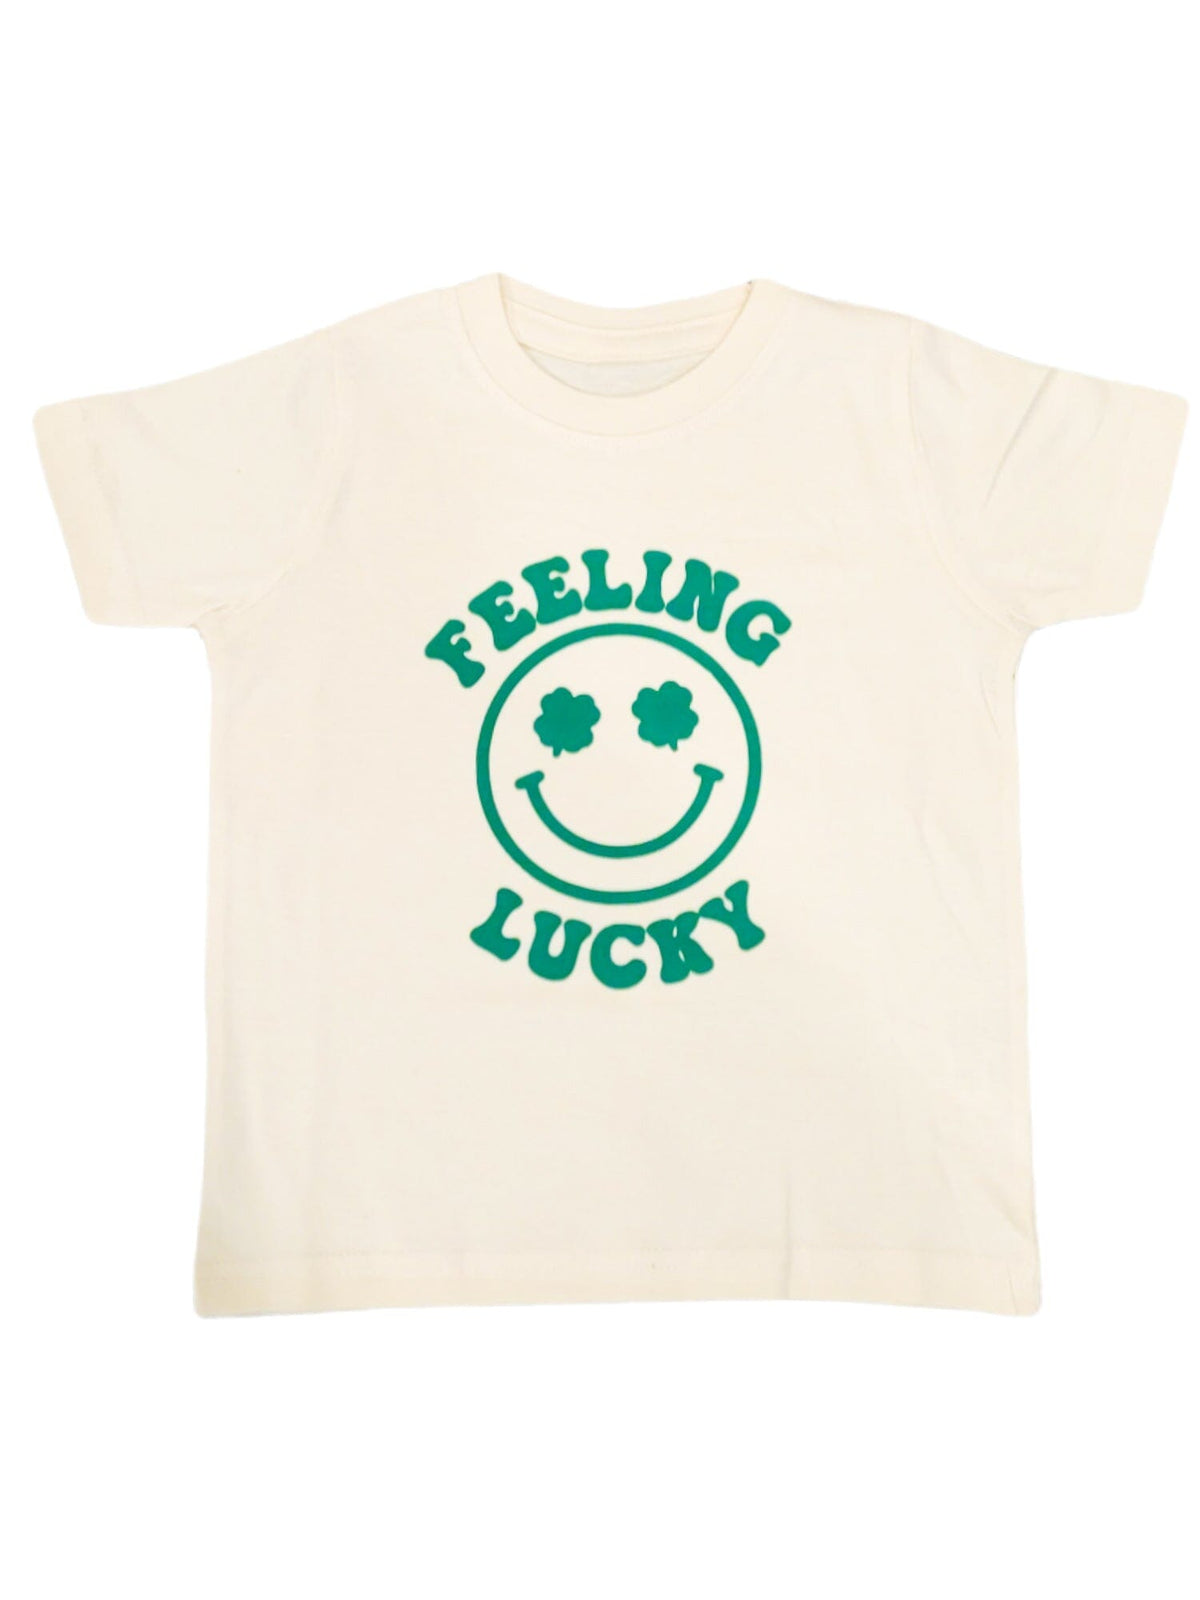 Feeling Lucky Kid's Shirt